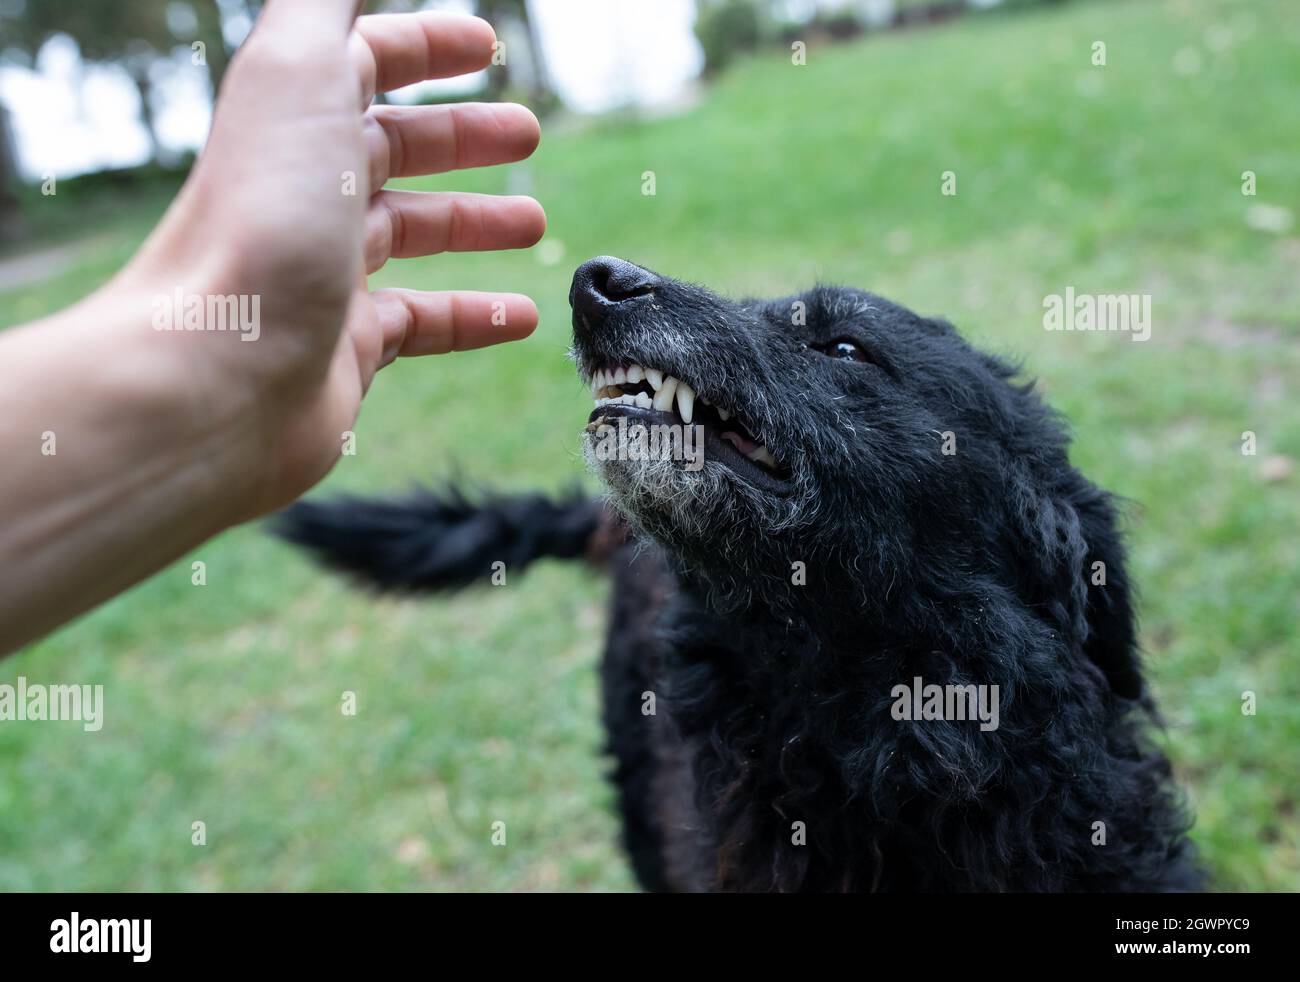 Primer plano de perro asegurado mostrando dientes a un extraño que se acerca con la mano al animal Foto de stock